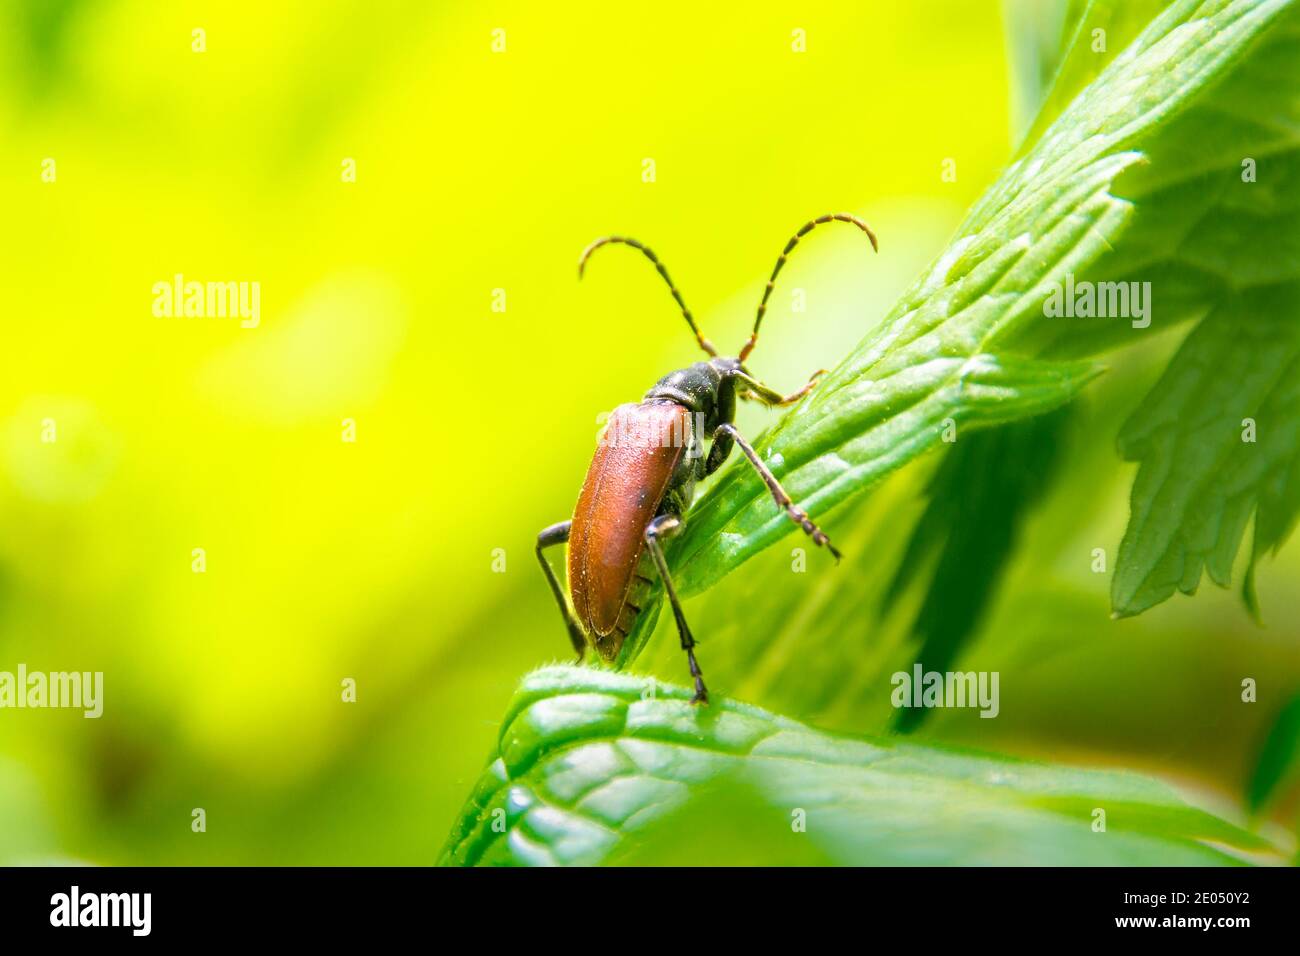 léptura rouge coléoptère mâle rampant sur l'herbe, foyer sélectif Banque D'Images